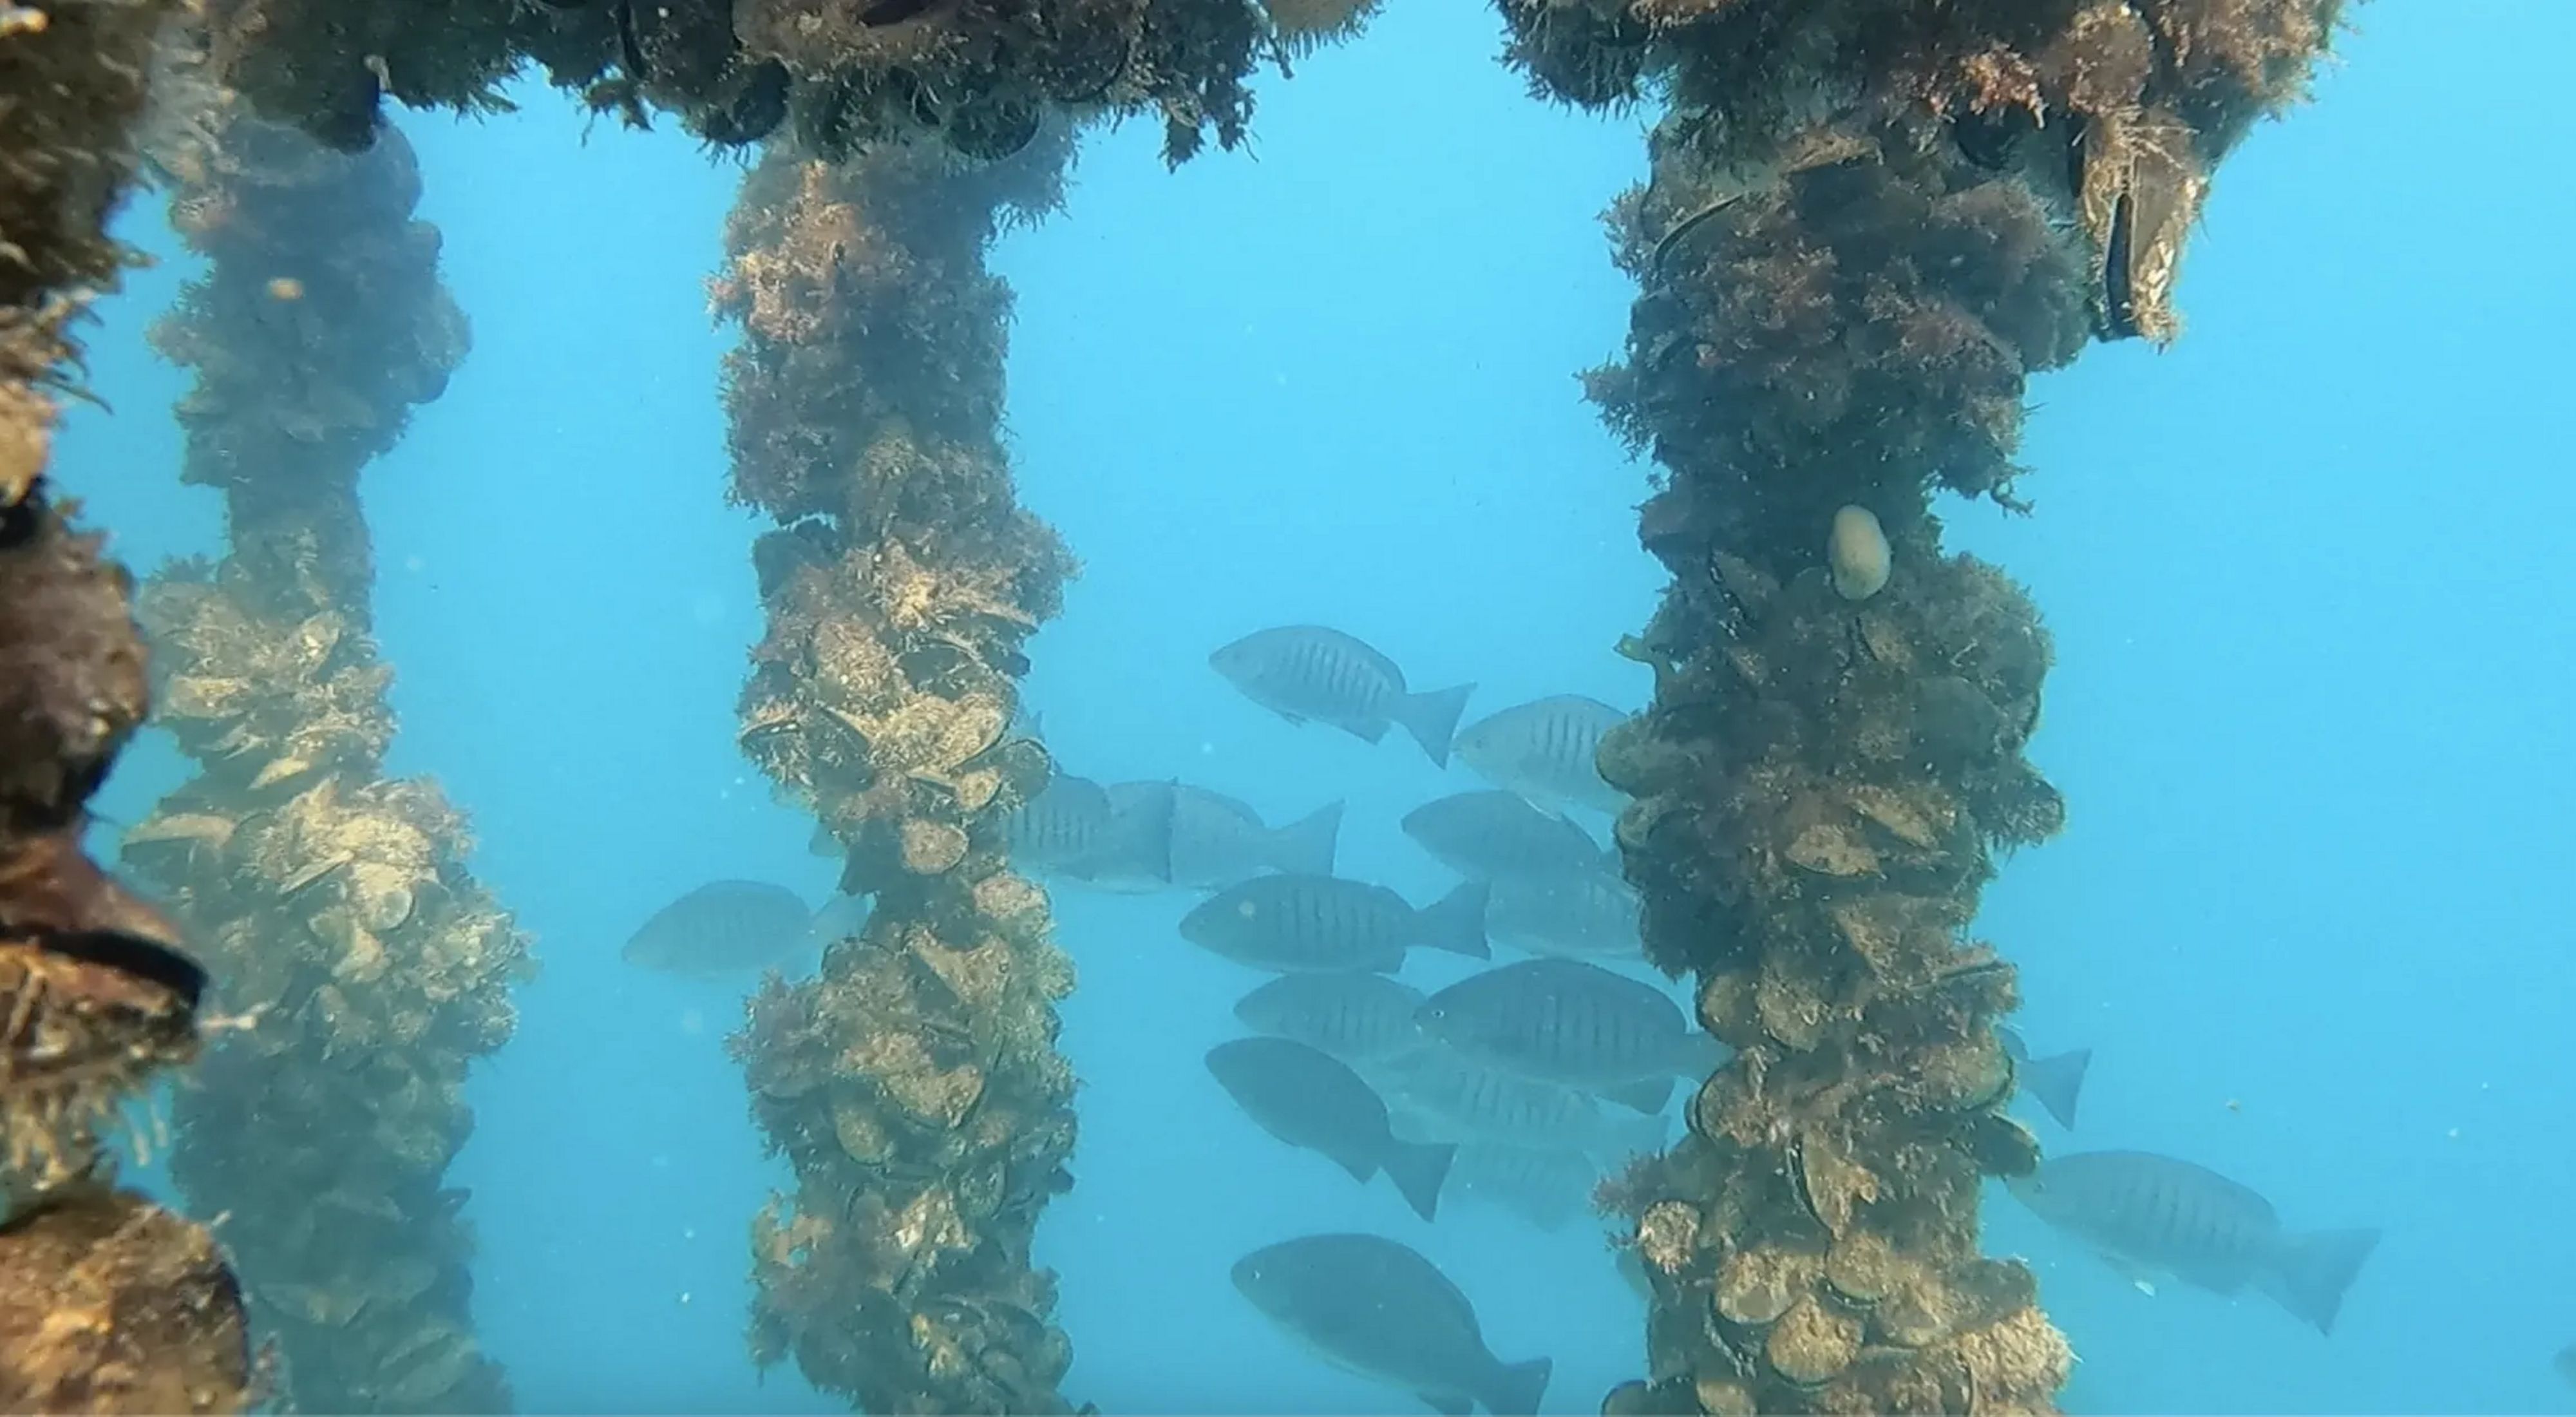 A school of  fish swim alongside mussels